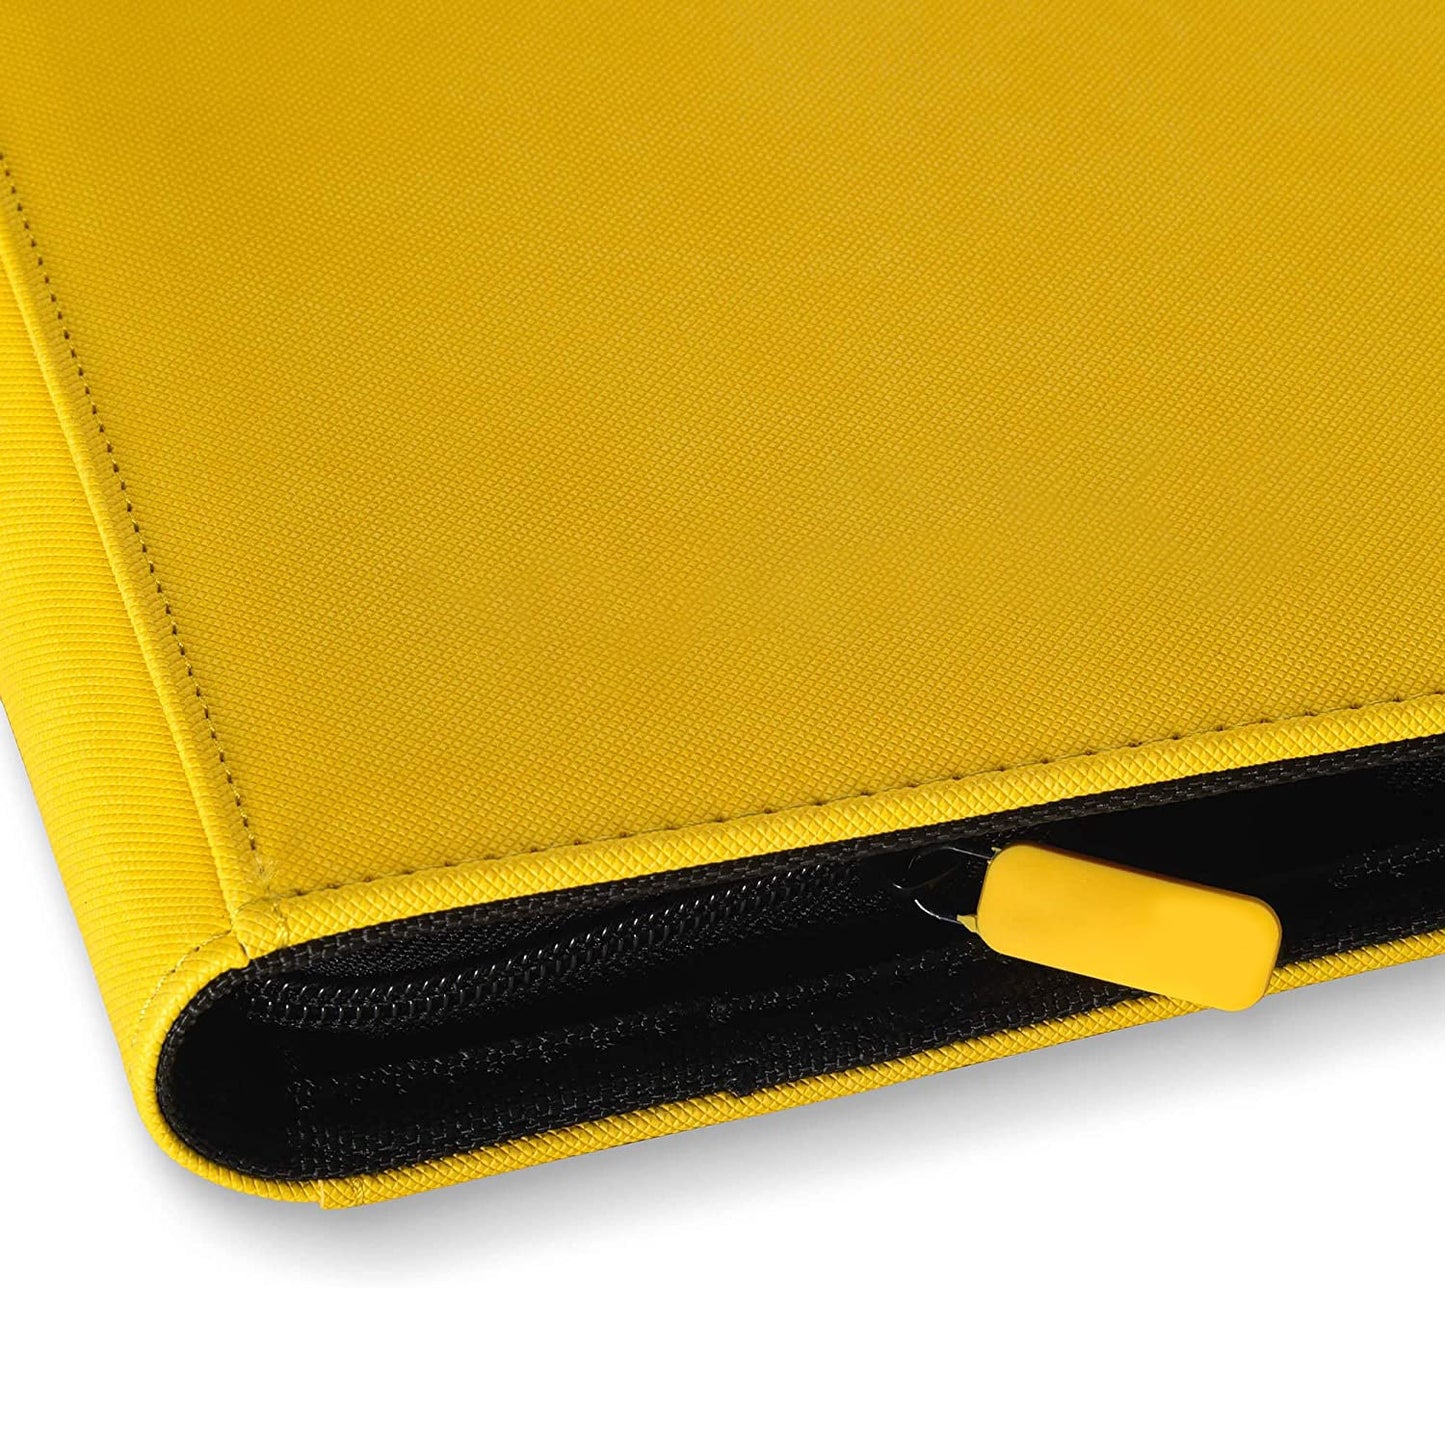 Premium Zip Binder 9 Pocket Trading Card Album Folder - Yellow